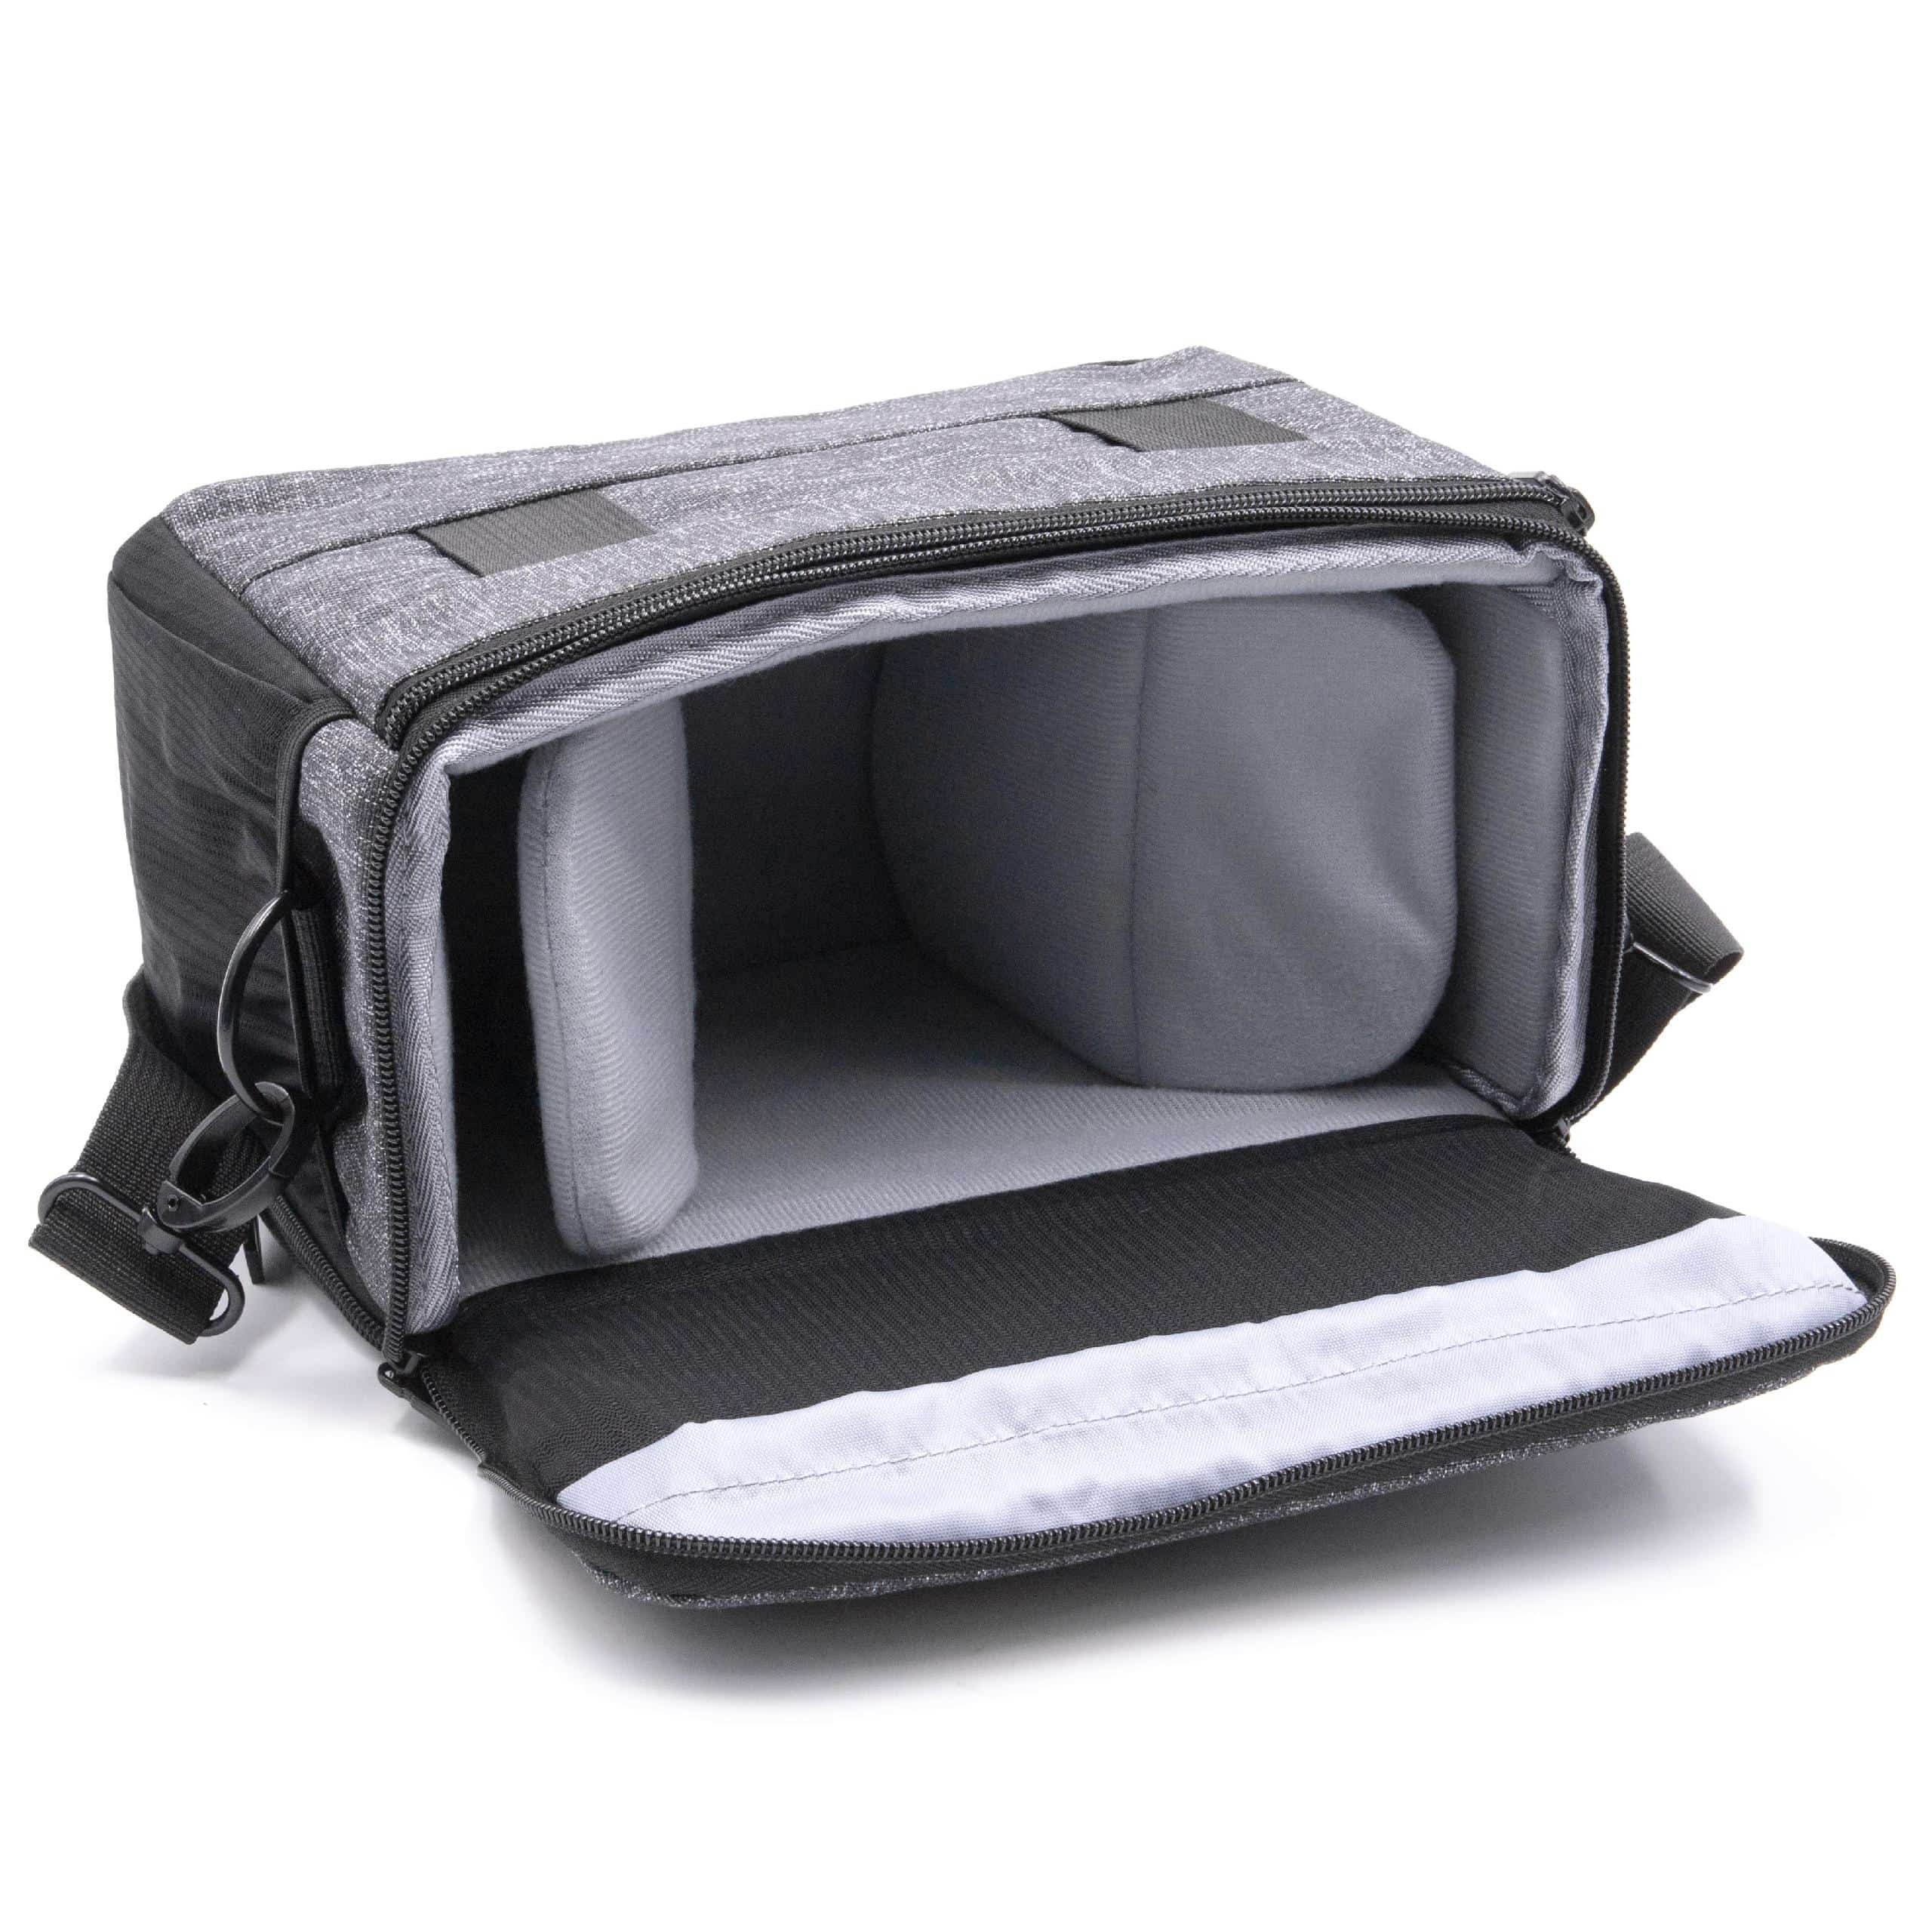 Camera Case suitable for K-1 Pentax Camera etc. - black / grey, 260 x 195 x 150 mm + Shoulder Strap